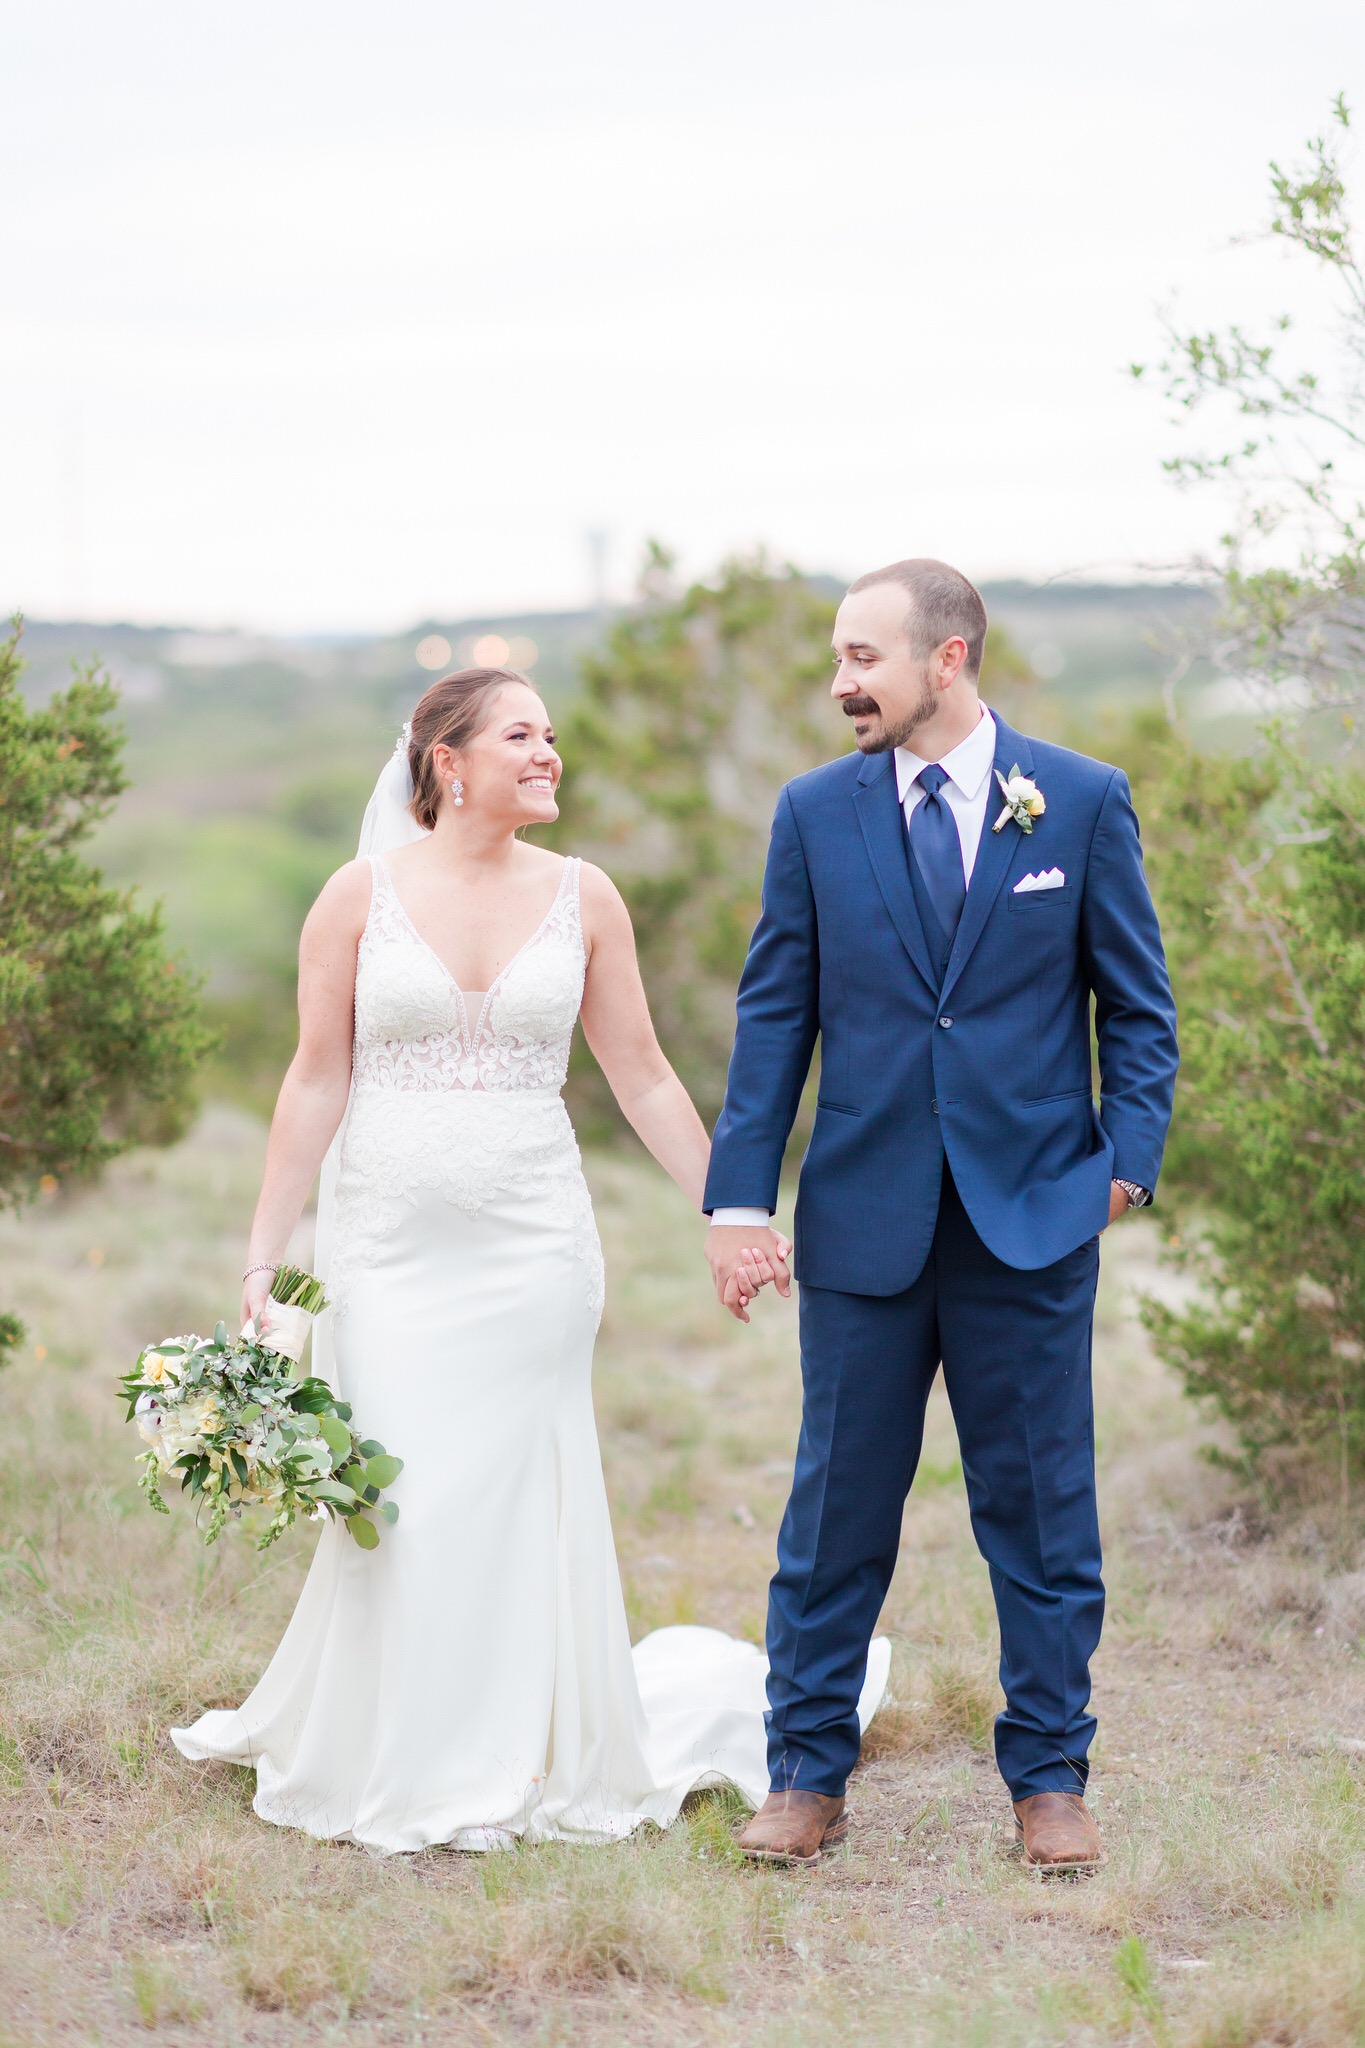 Wedding at the Terrace Club in Dripping Springs, TX by Dawn Elizabeth Studios, Texas Wedding Photographer